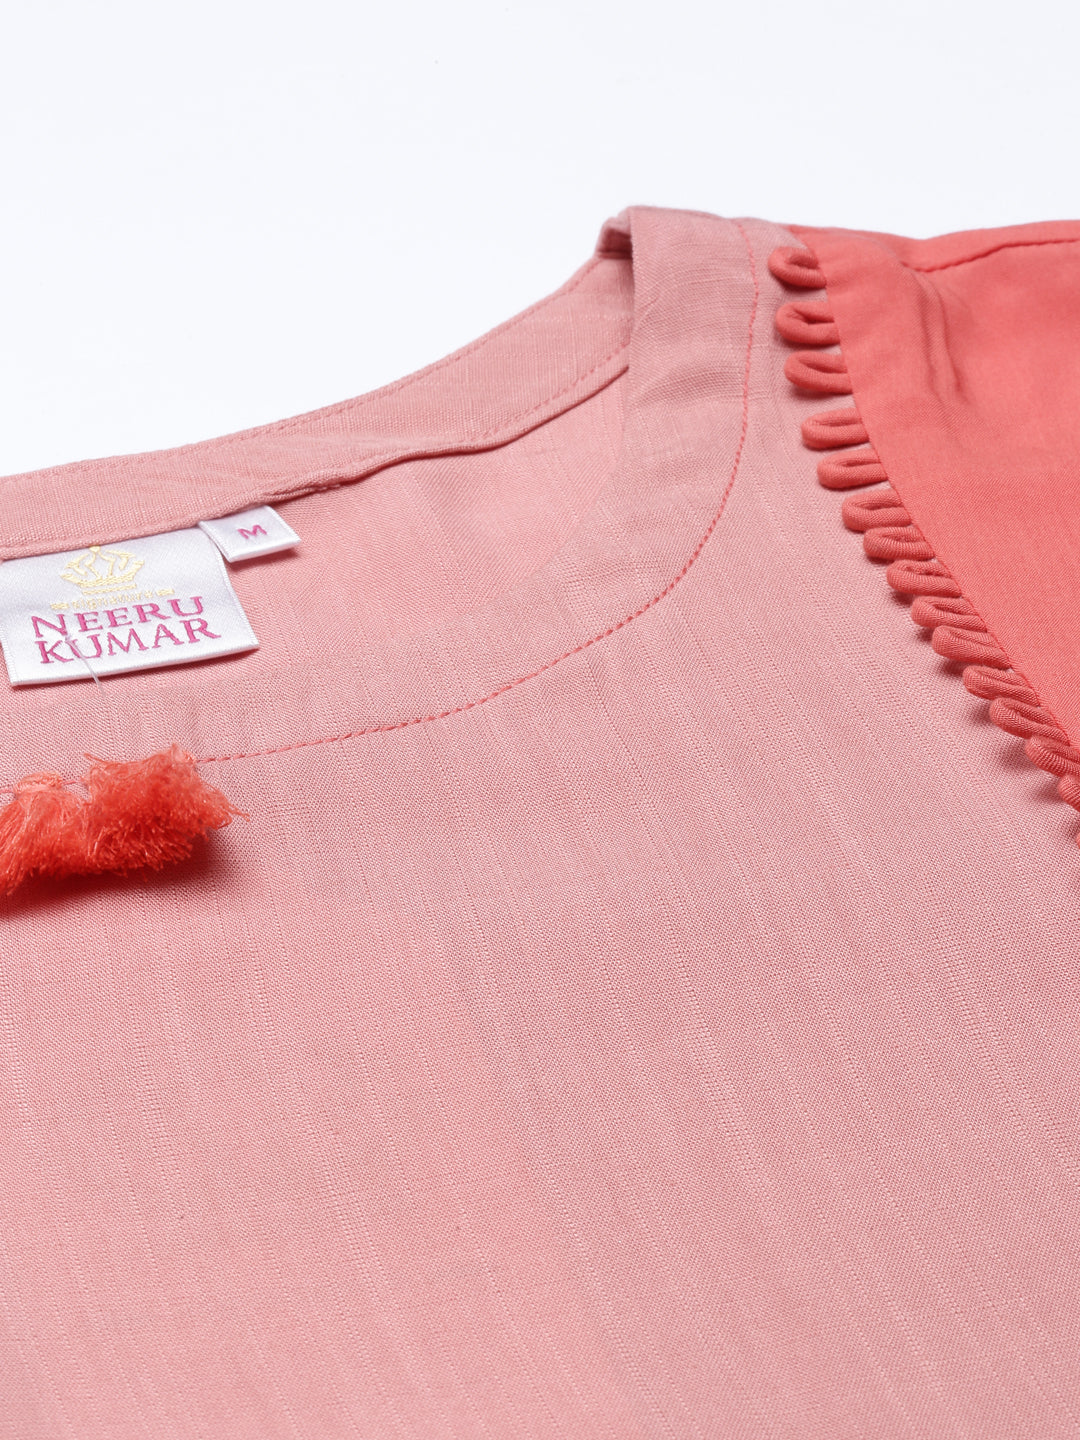 Neeru's Peach Color Slub Riyon Fabric Kurta